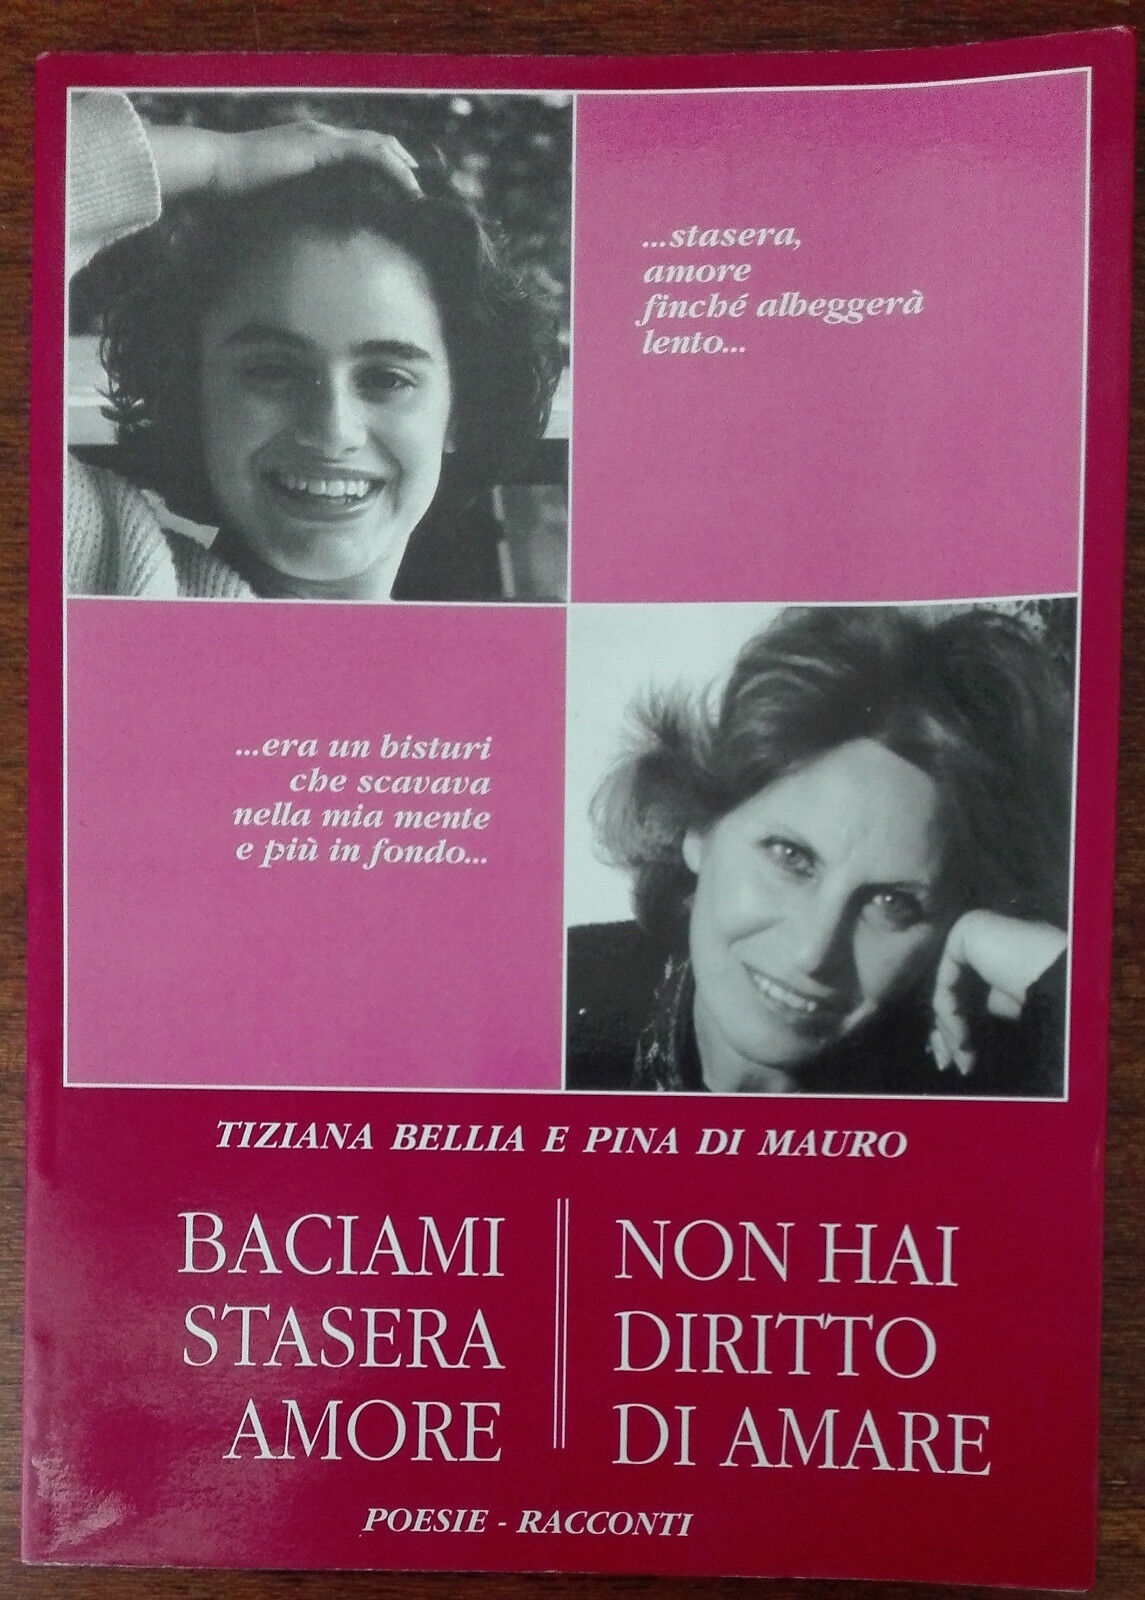 Baciami stasera amore;Non hai diritto di amare-Bellia,Di Mauro-Signorello,1994-A